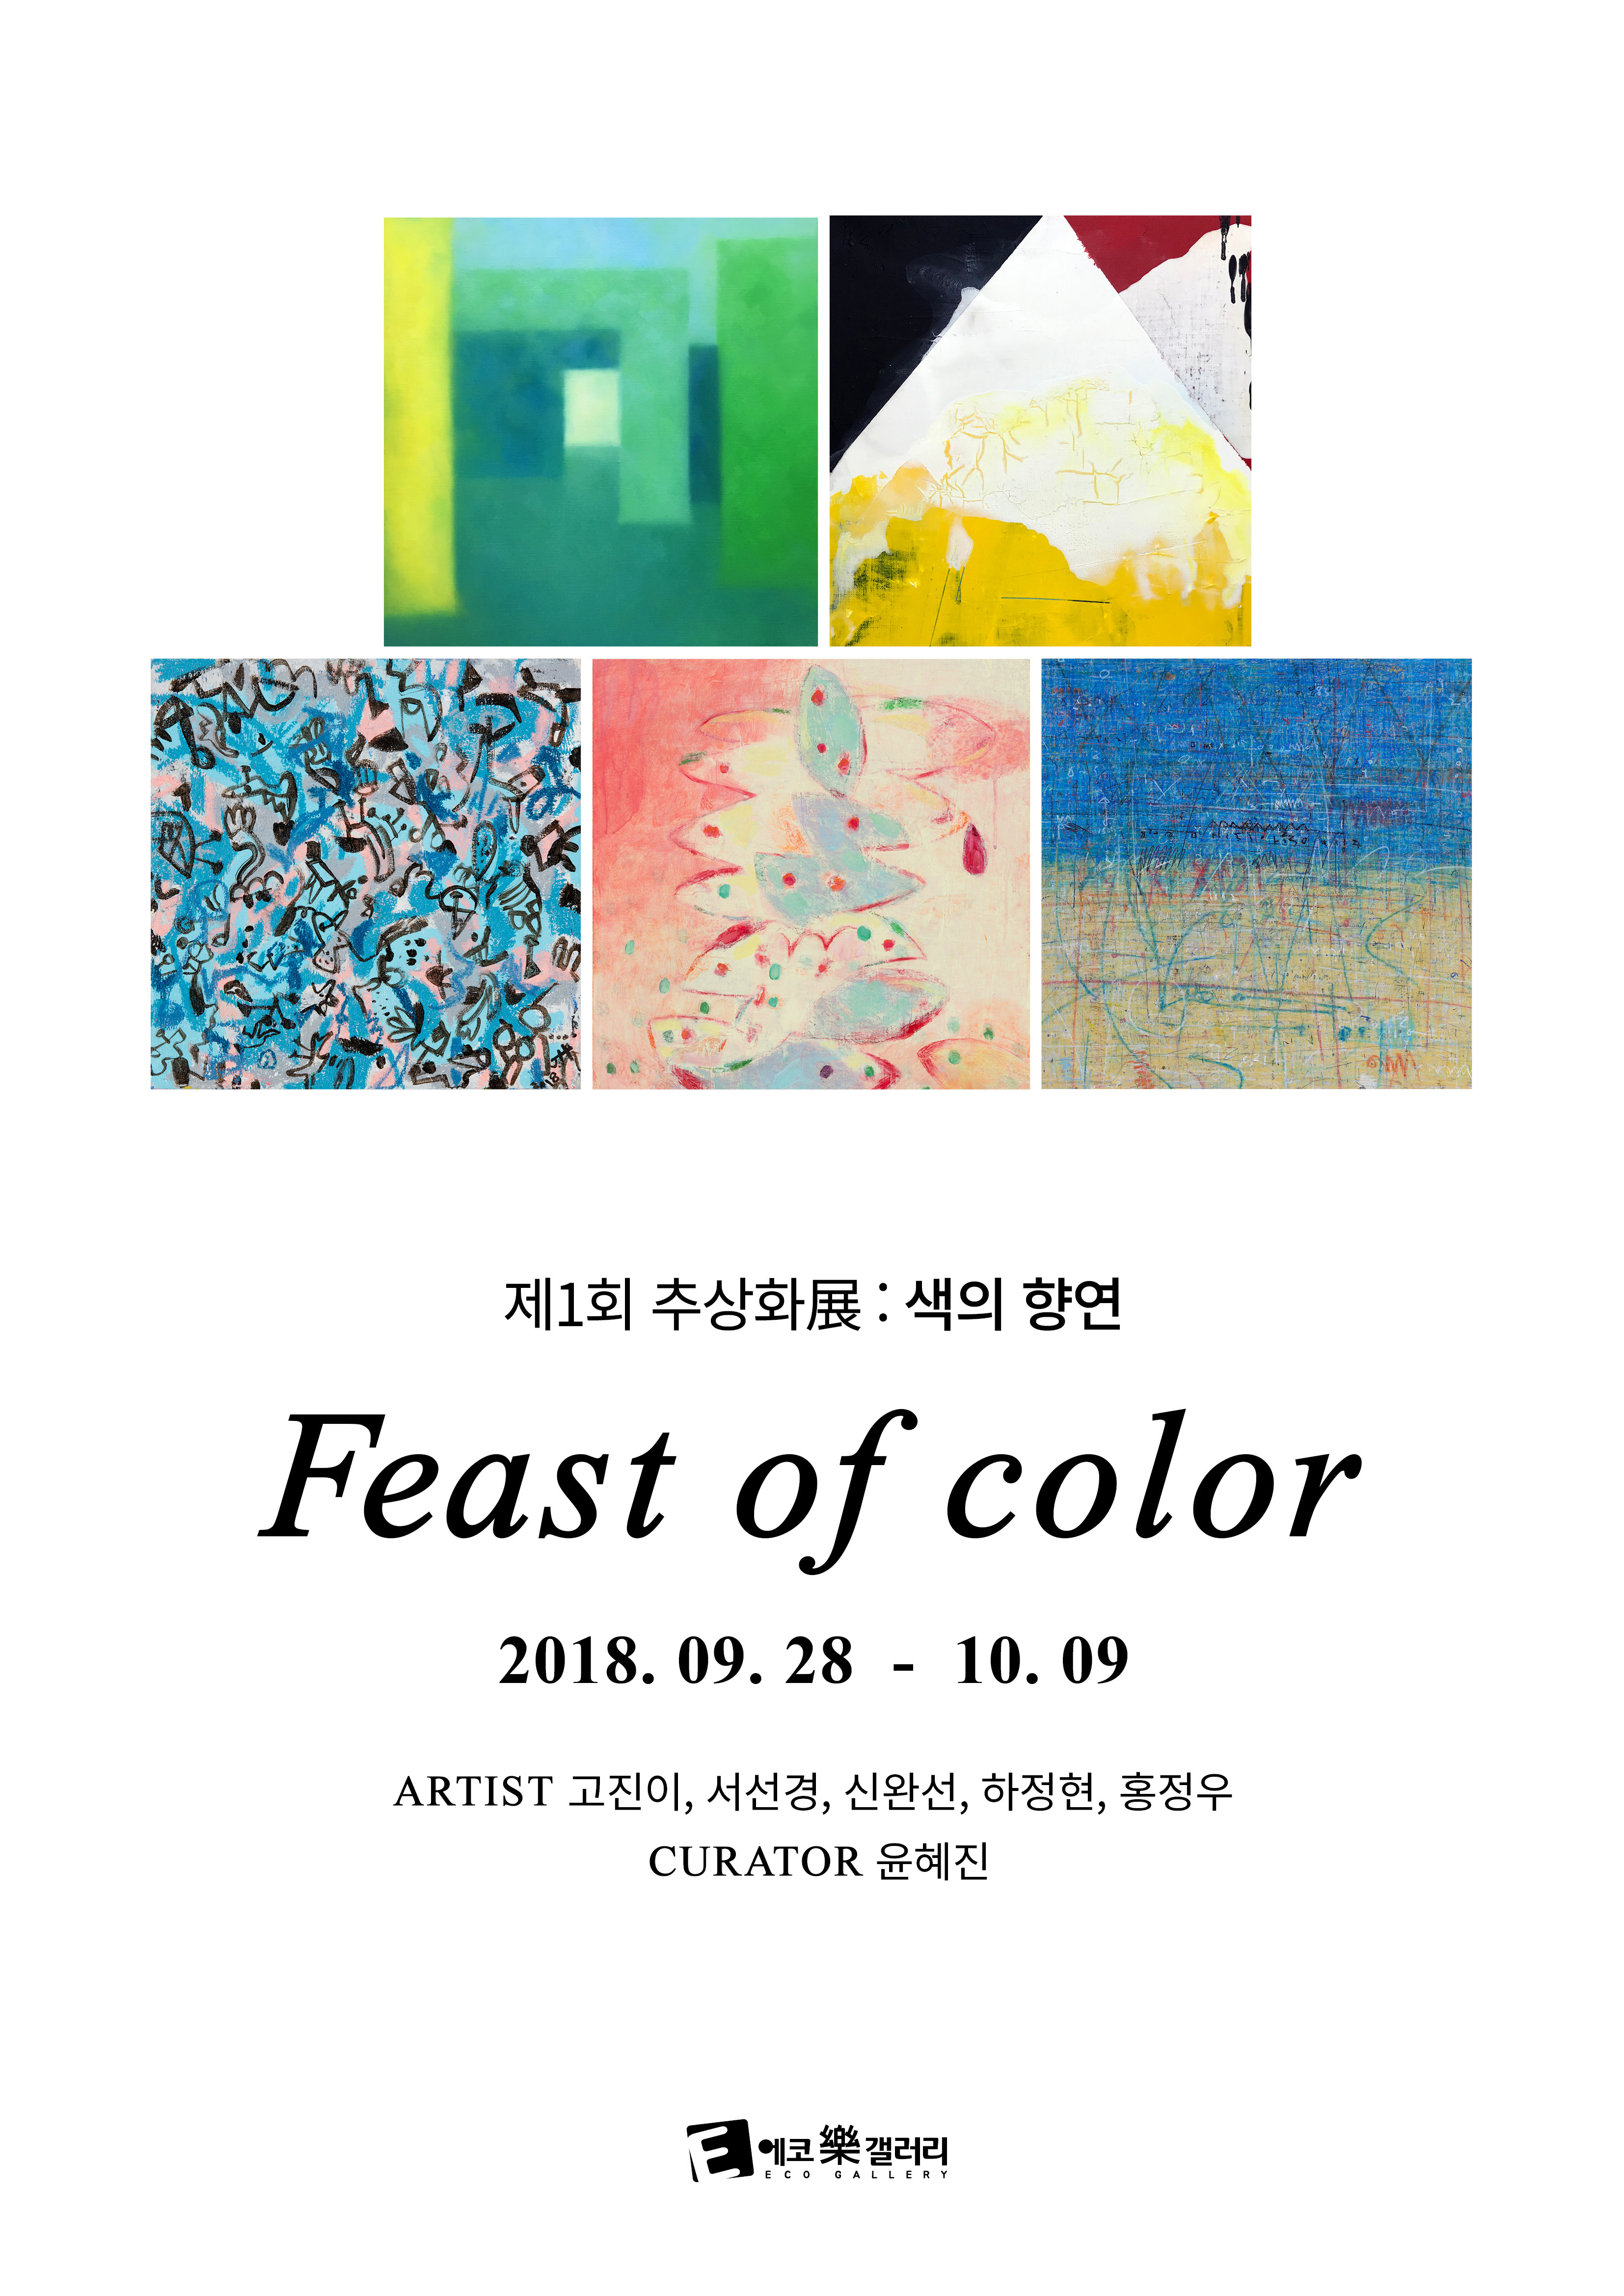 제 1회 추상화展 : Feast of color